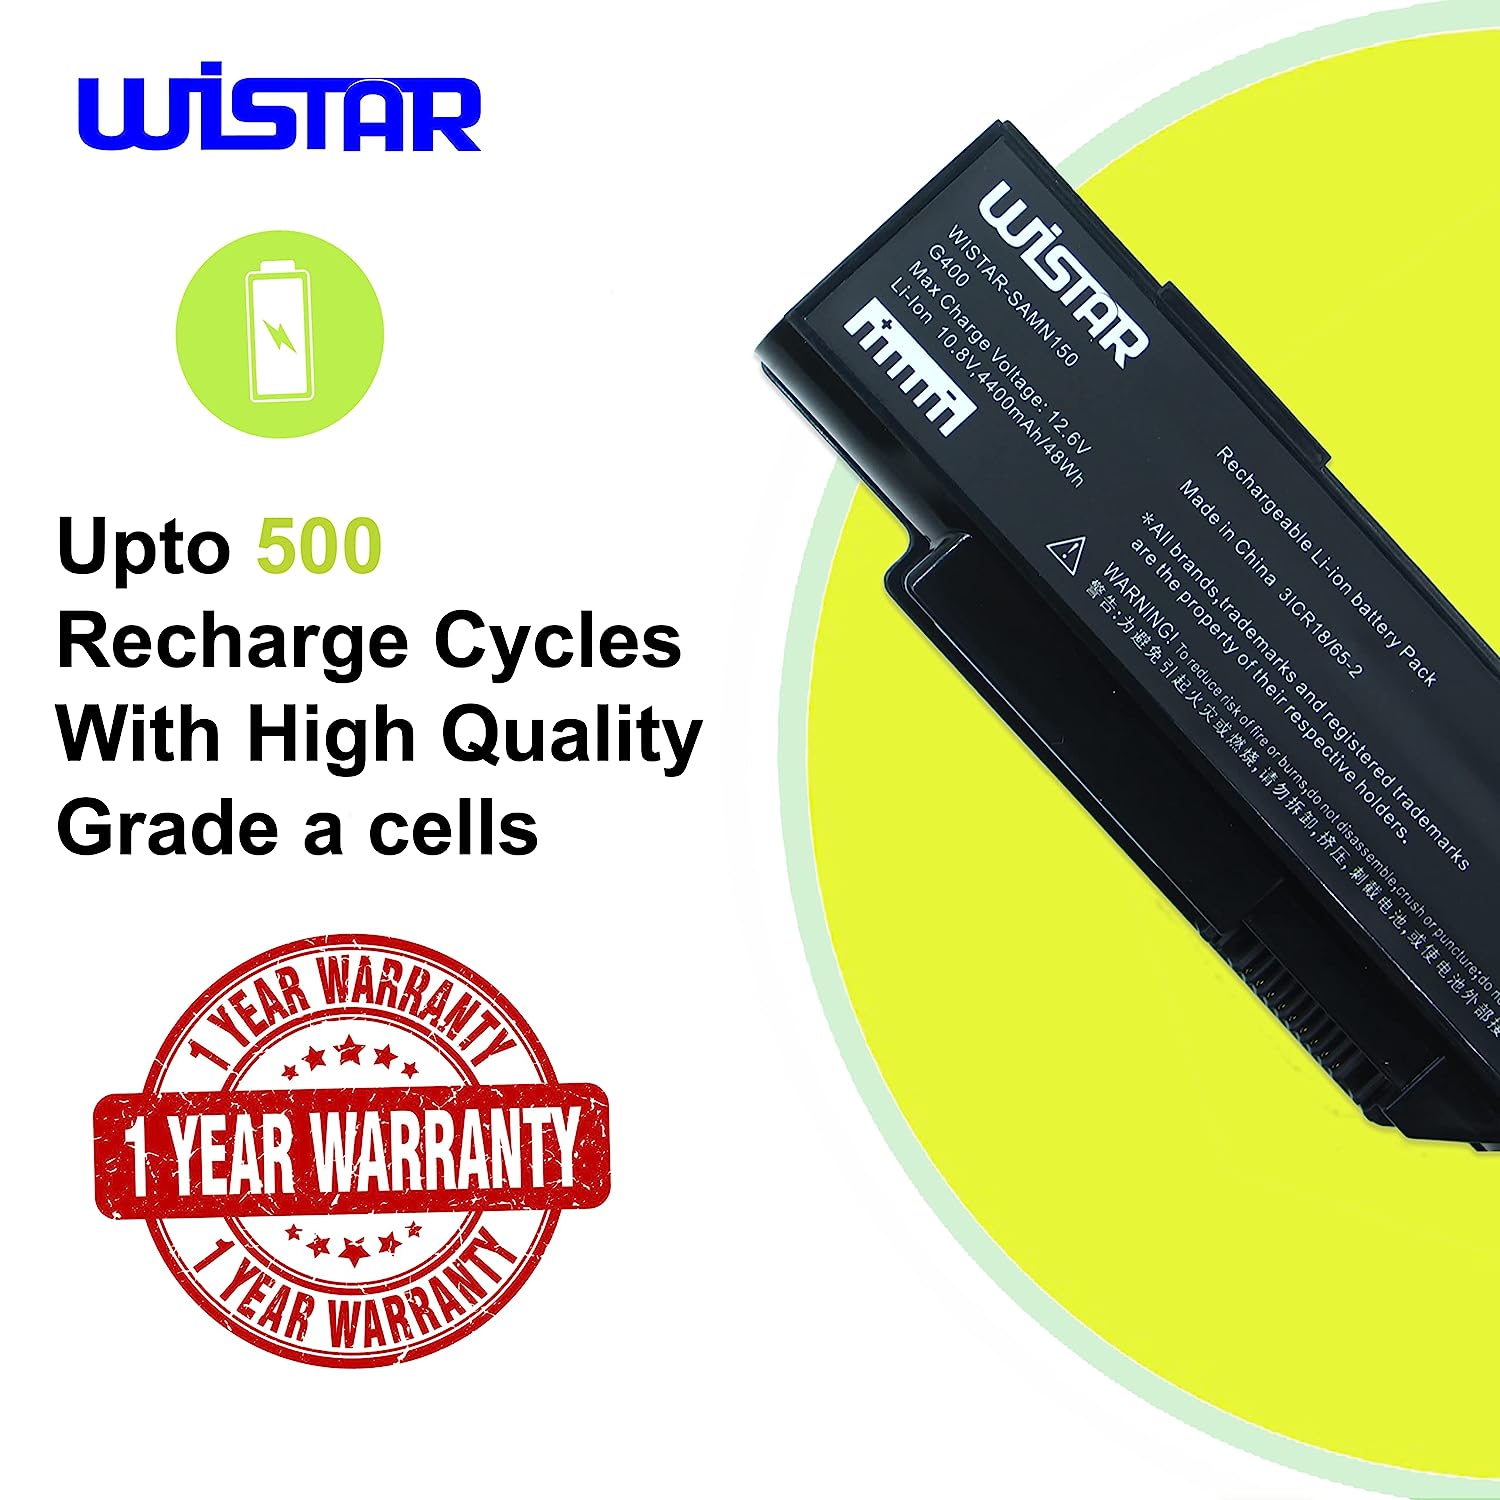 WISTAR Laptop Battery Compatible for Lenovo G400 3000 G400 3000 G400 59011ASM BAHL00L6S FRU 121SS080C